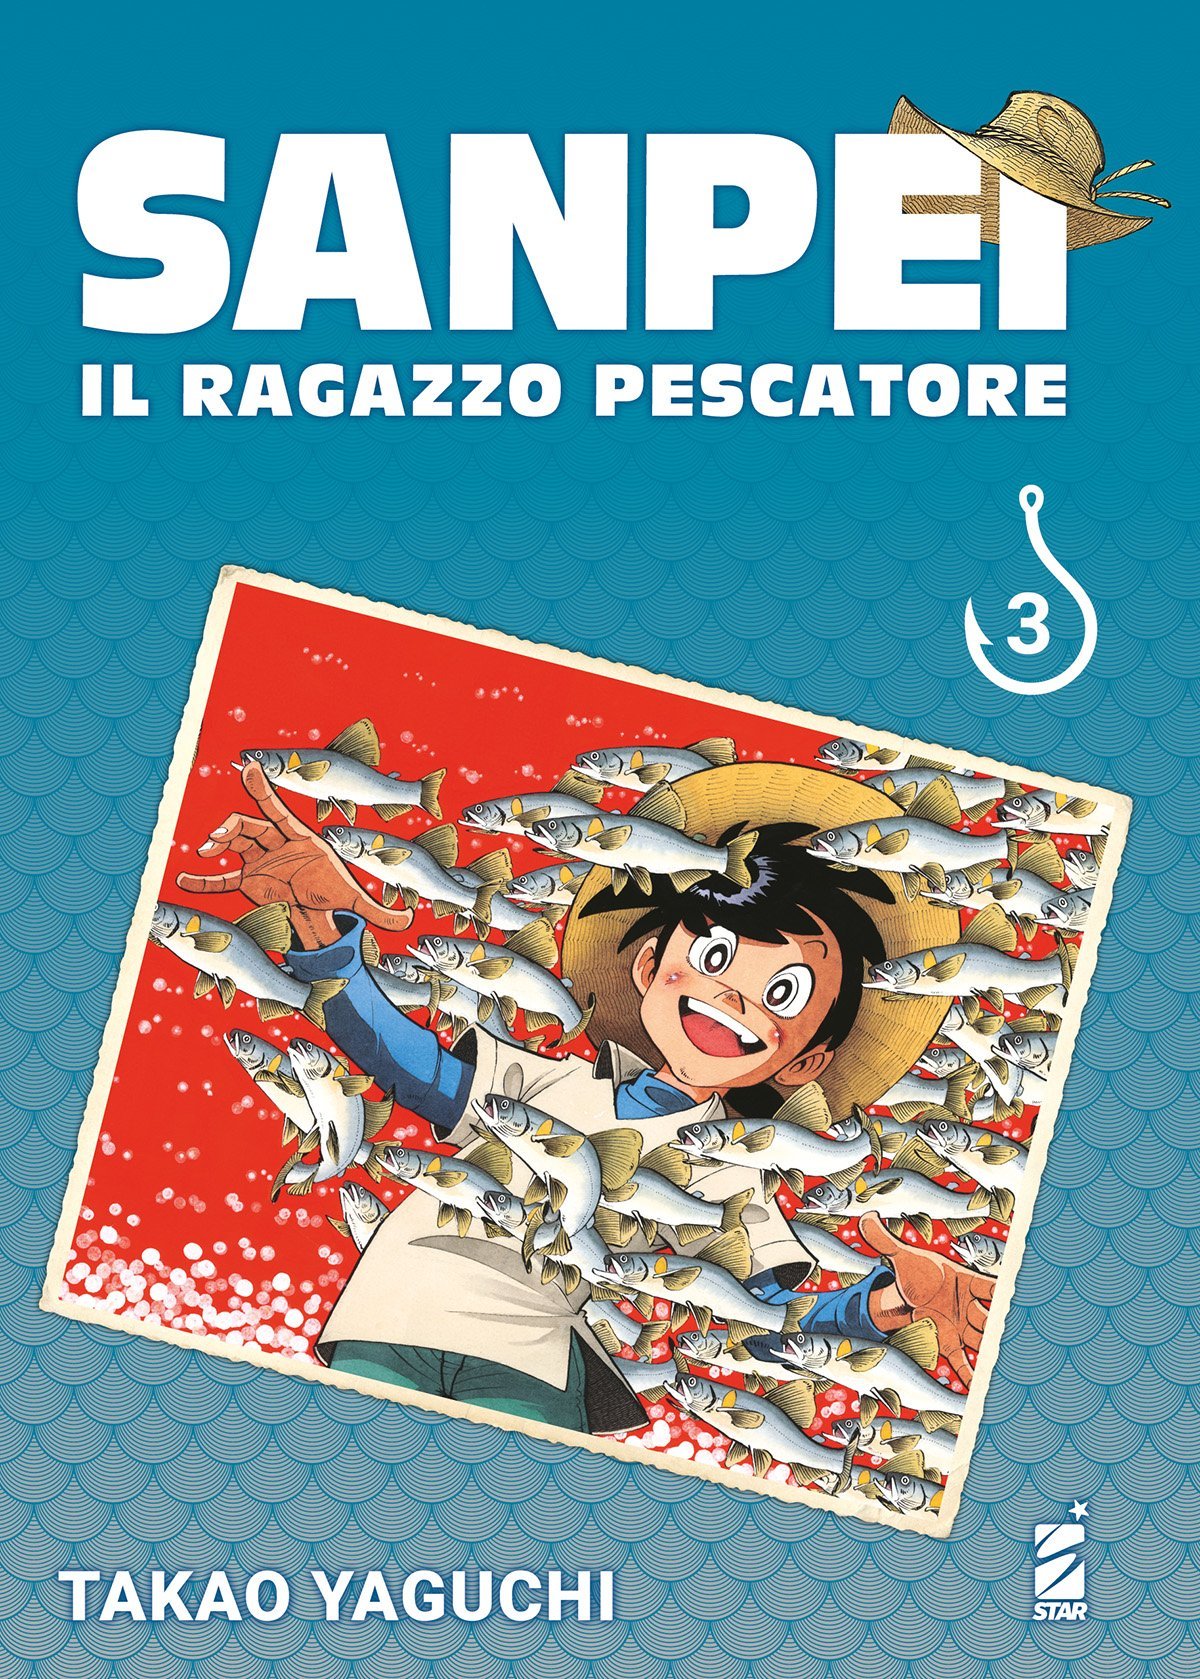 SANPEI IL RAGAZZO PESCATORE TRIBUTE EDITION 3 DI 12